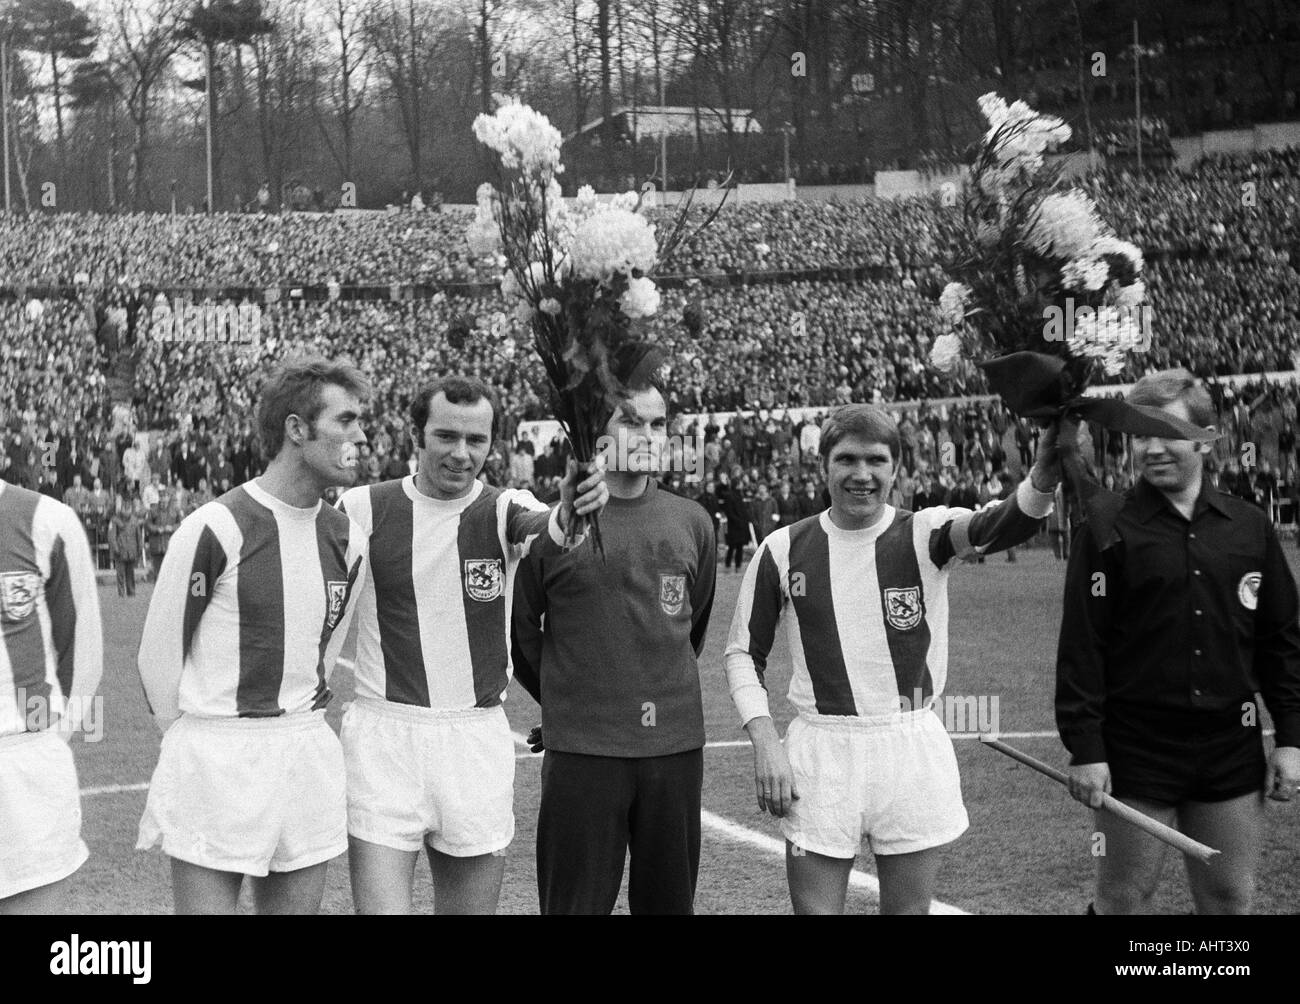 Calcio, Regionalliga Ovest, 1970/1971, Stadio am Zoo a Wuppertal, Wuppertaler SV versus VfL Bochum 2:1, i giocatori di calcio della squadra di Wuppertal onorato con fiori, f.l.t.r. Juergen Kohle, Herbert Stoeckl, Rudolf Kraetschmer, Manfred Reichert, un riferimento Foto Stock